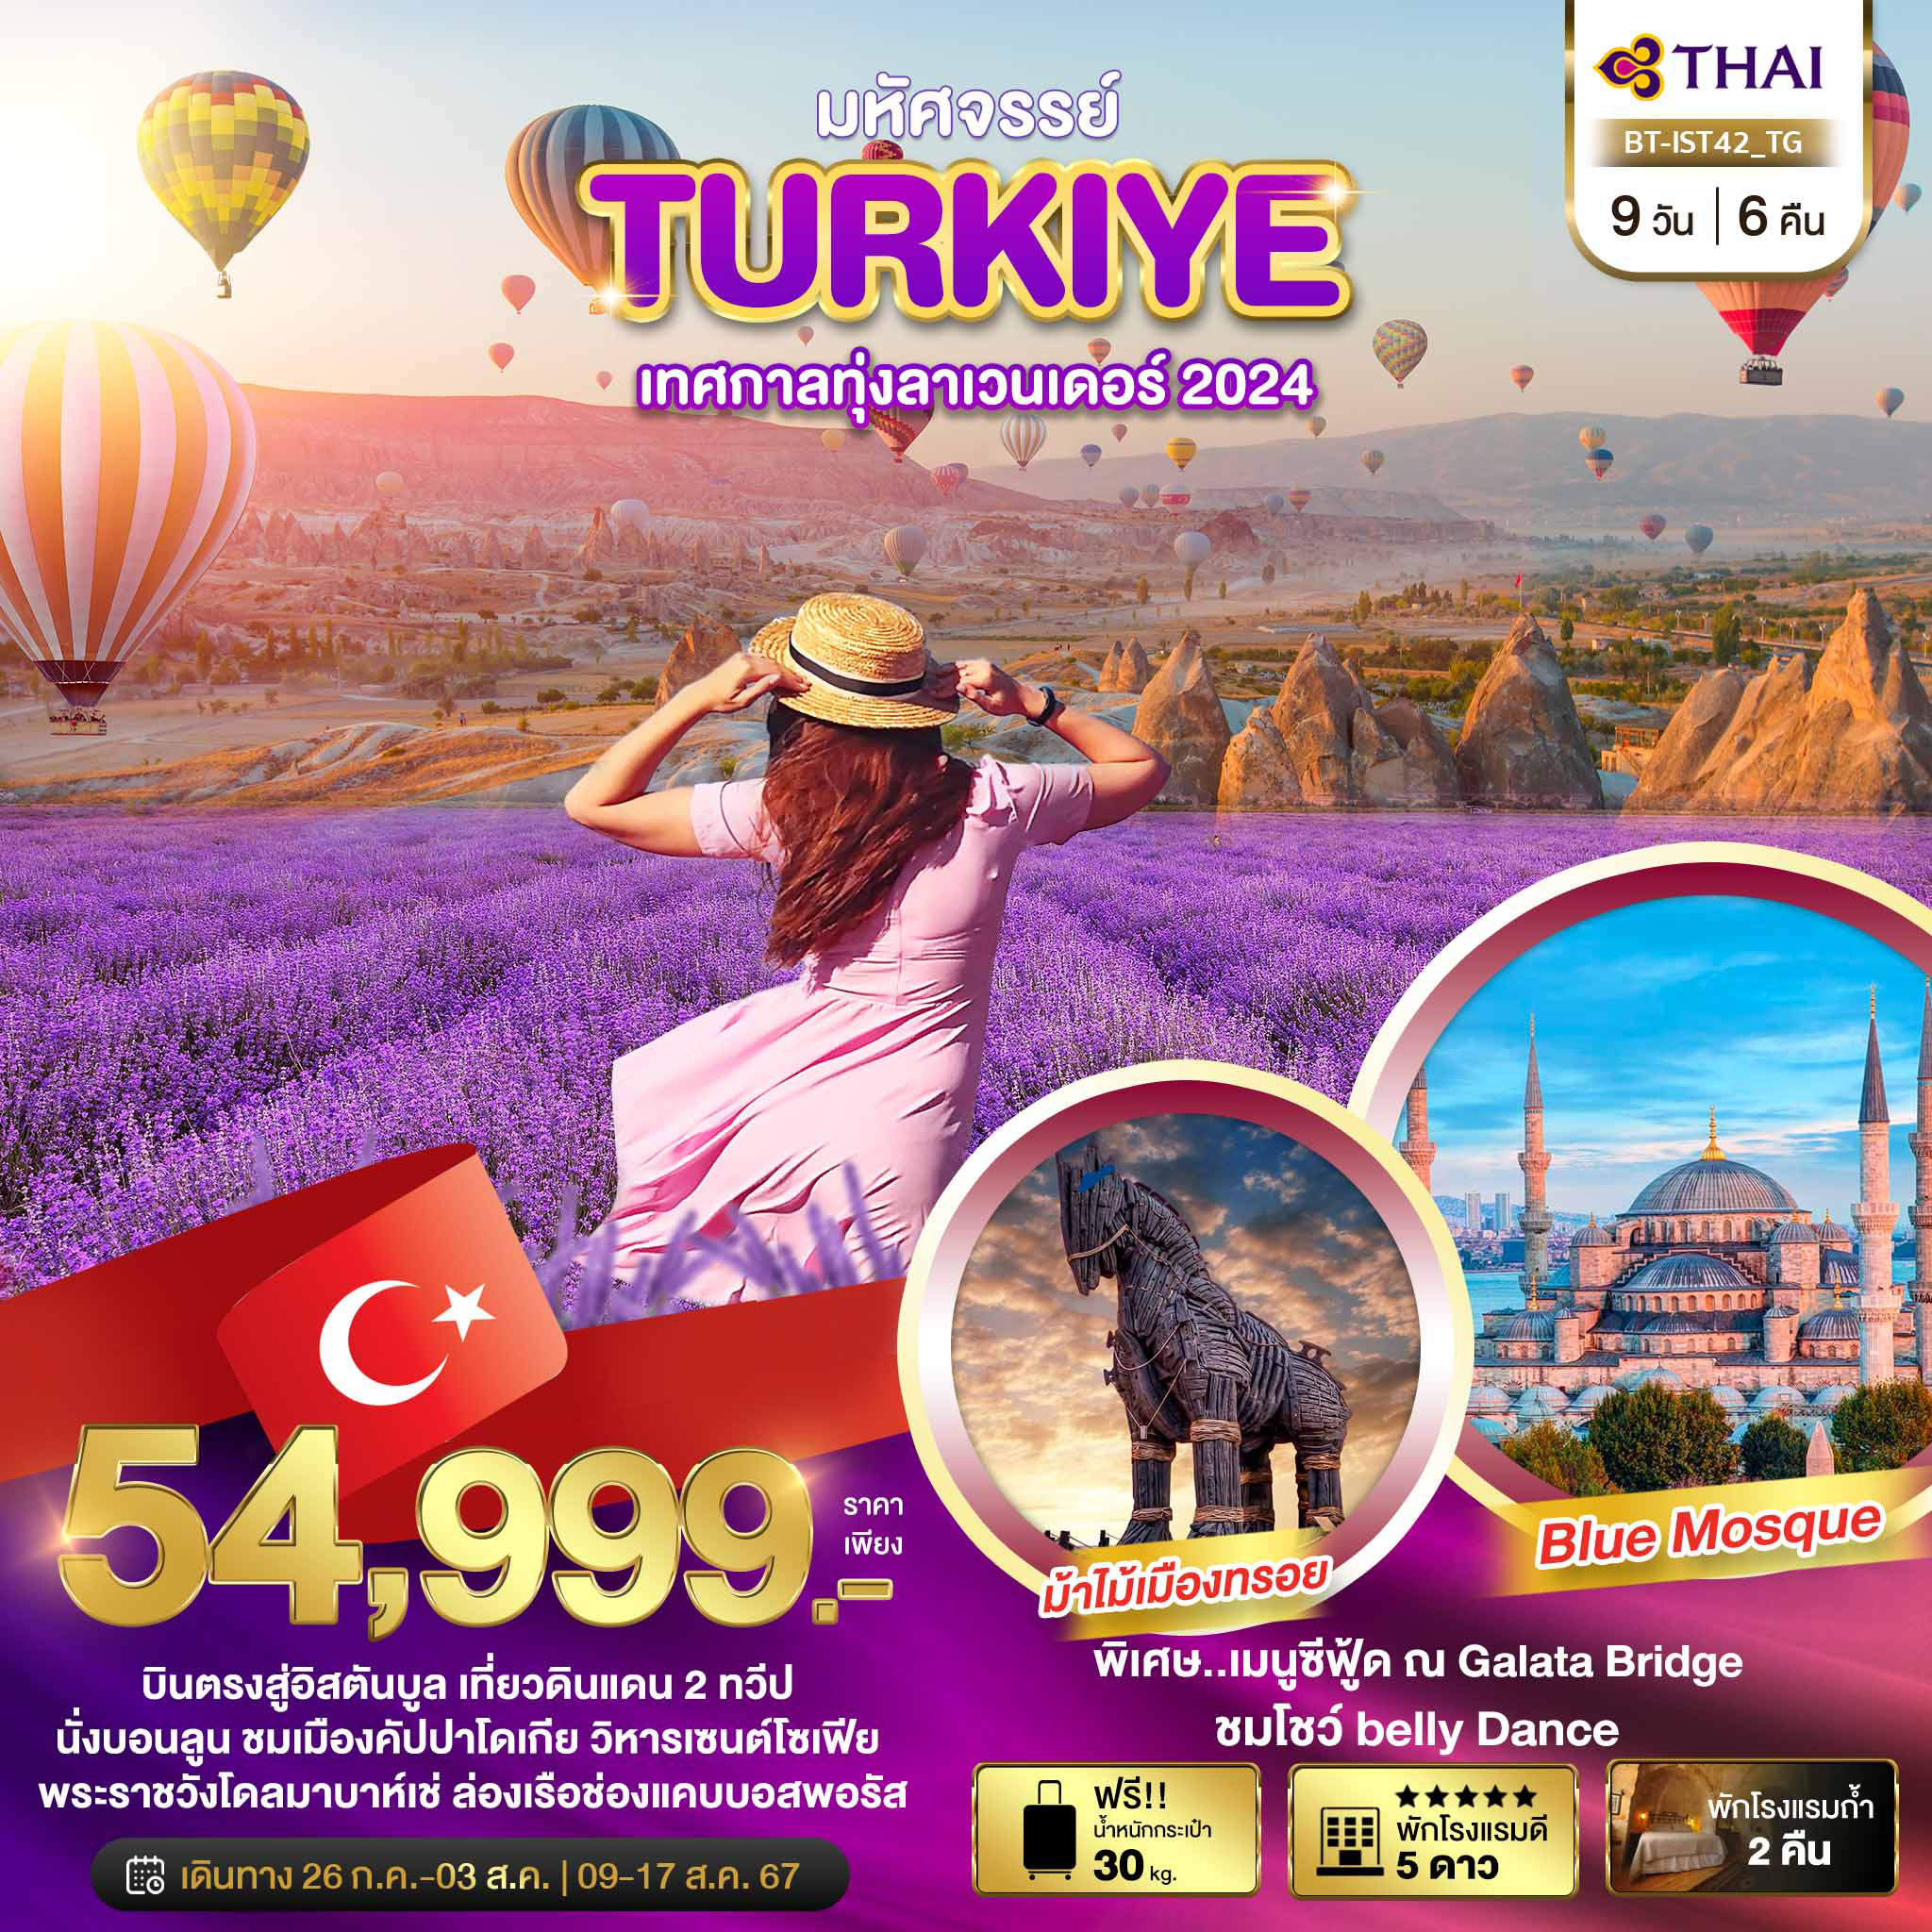 ทัวร์ตุรกี มหัศจรรย์ TURKIYE เทศกาลทุ่งลาเวนเดอร์ 2024 9วัน 6คืน (TG)